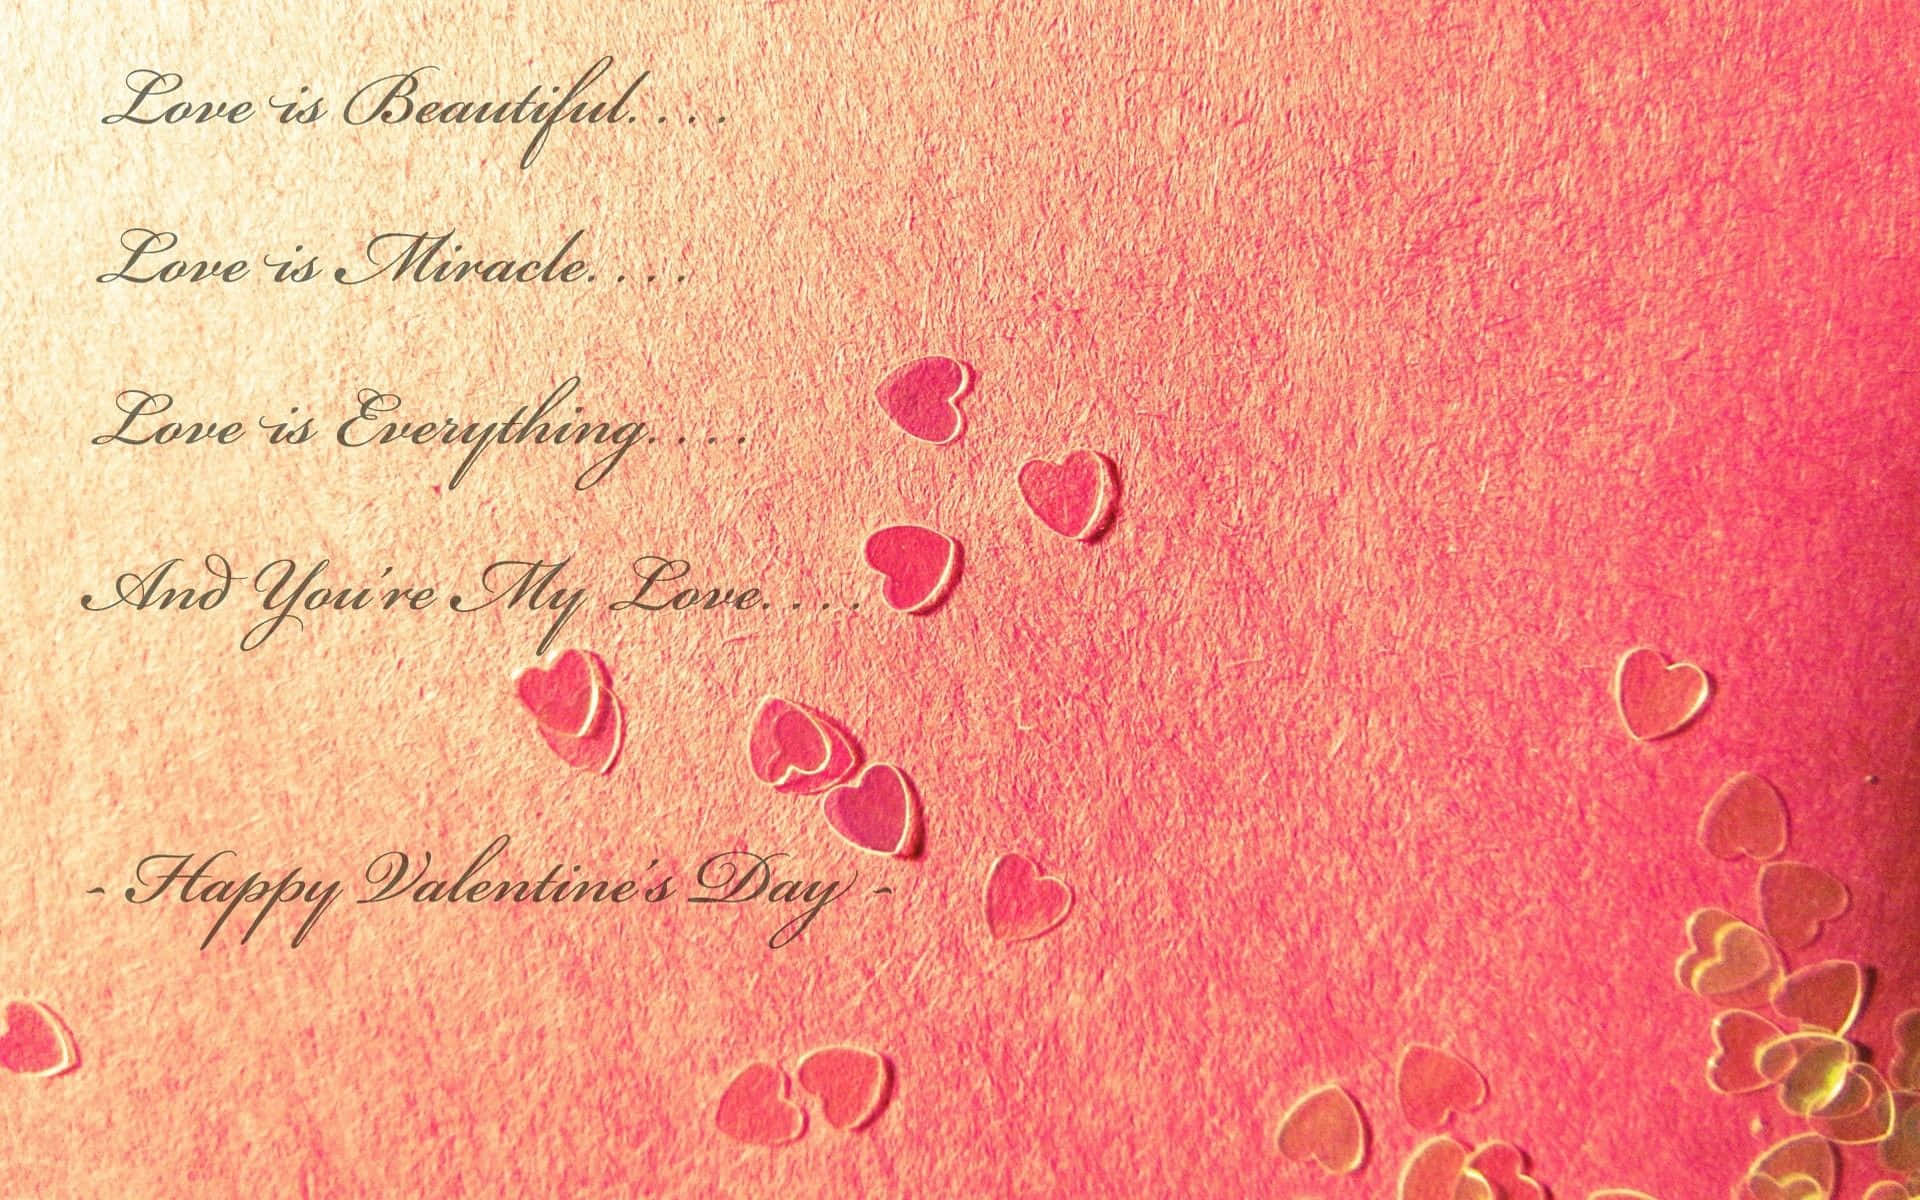 Vis din kærlighed med en sød Valentinsdagskort. Wallpaper